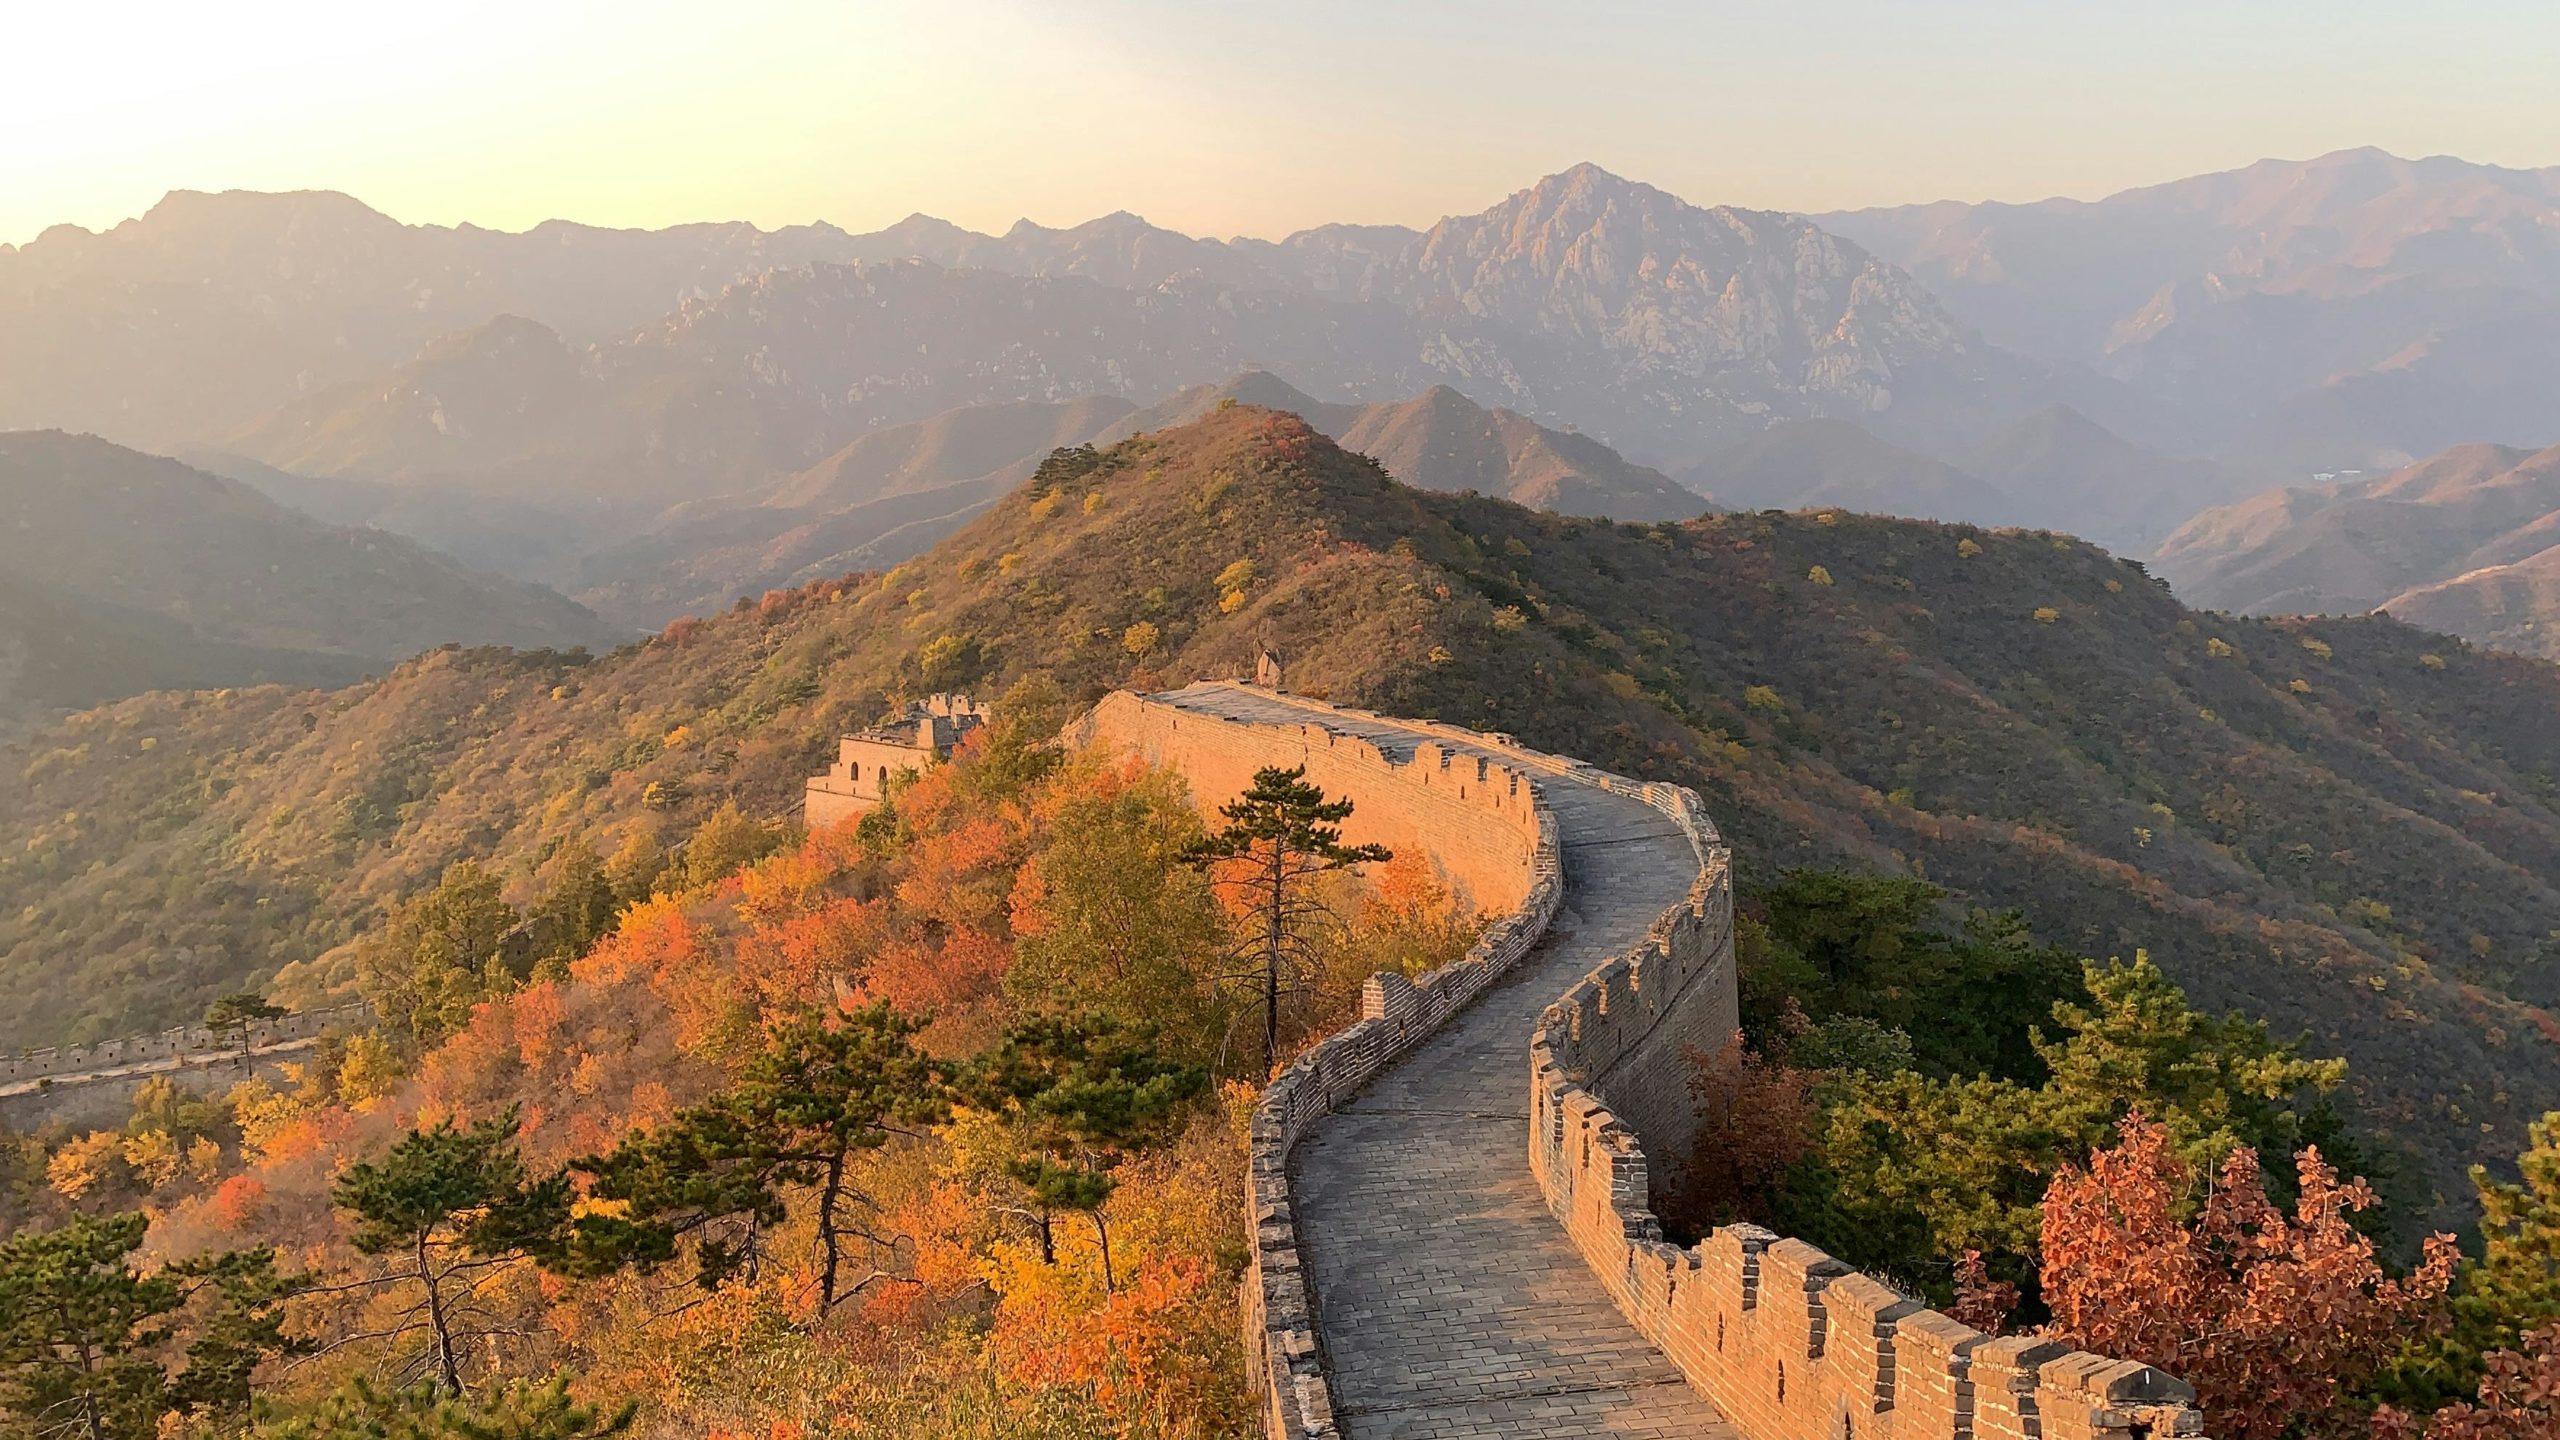 La grande muraille de chine sous le soleil couchant : une des destinations de rêve de parachutisme.